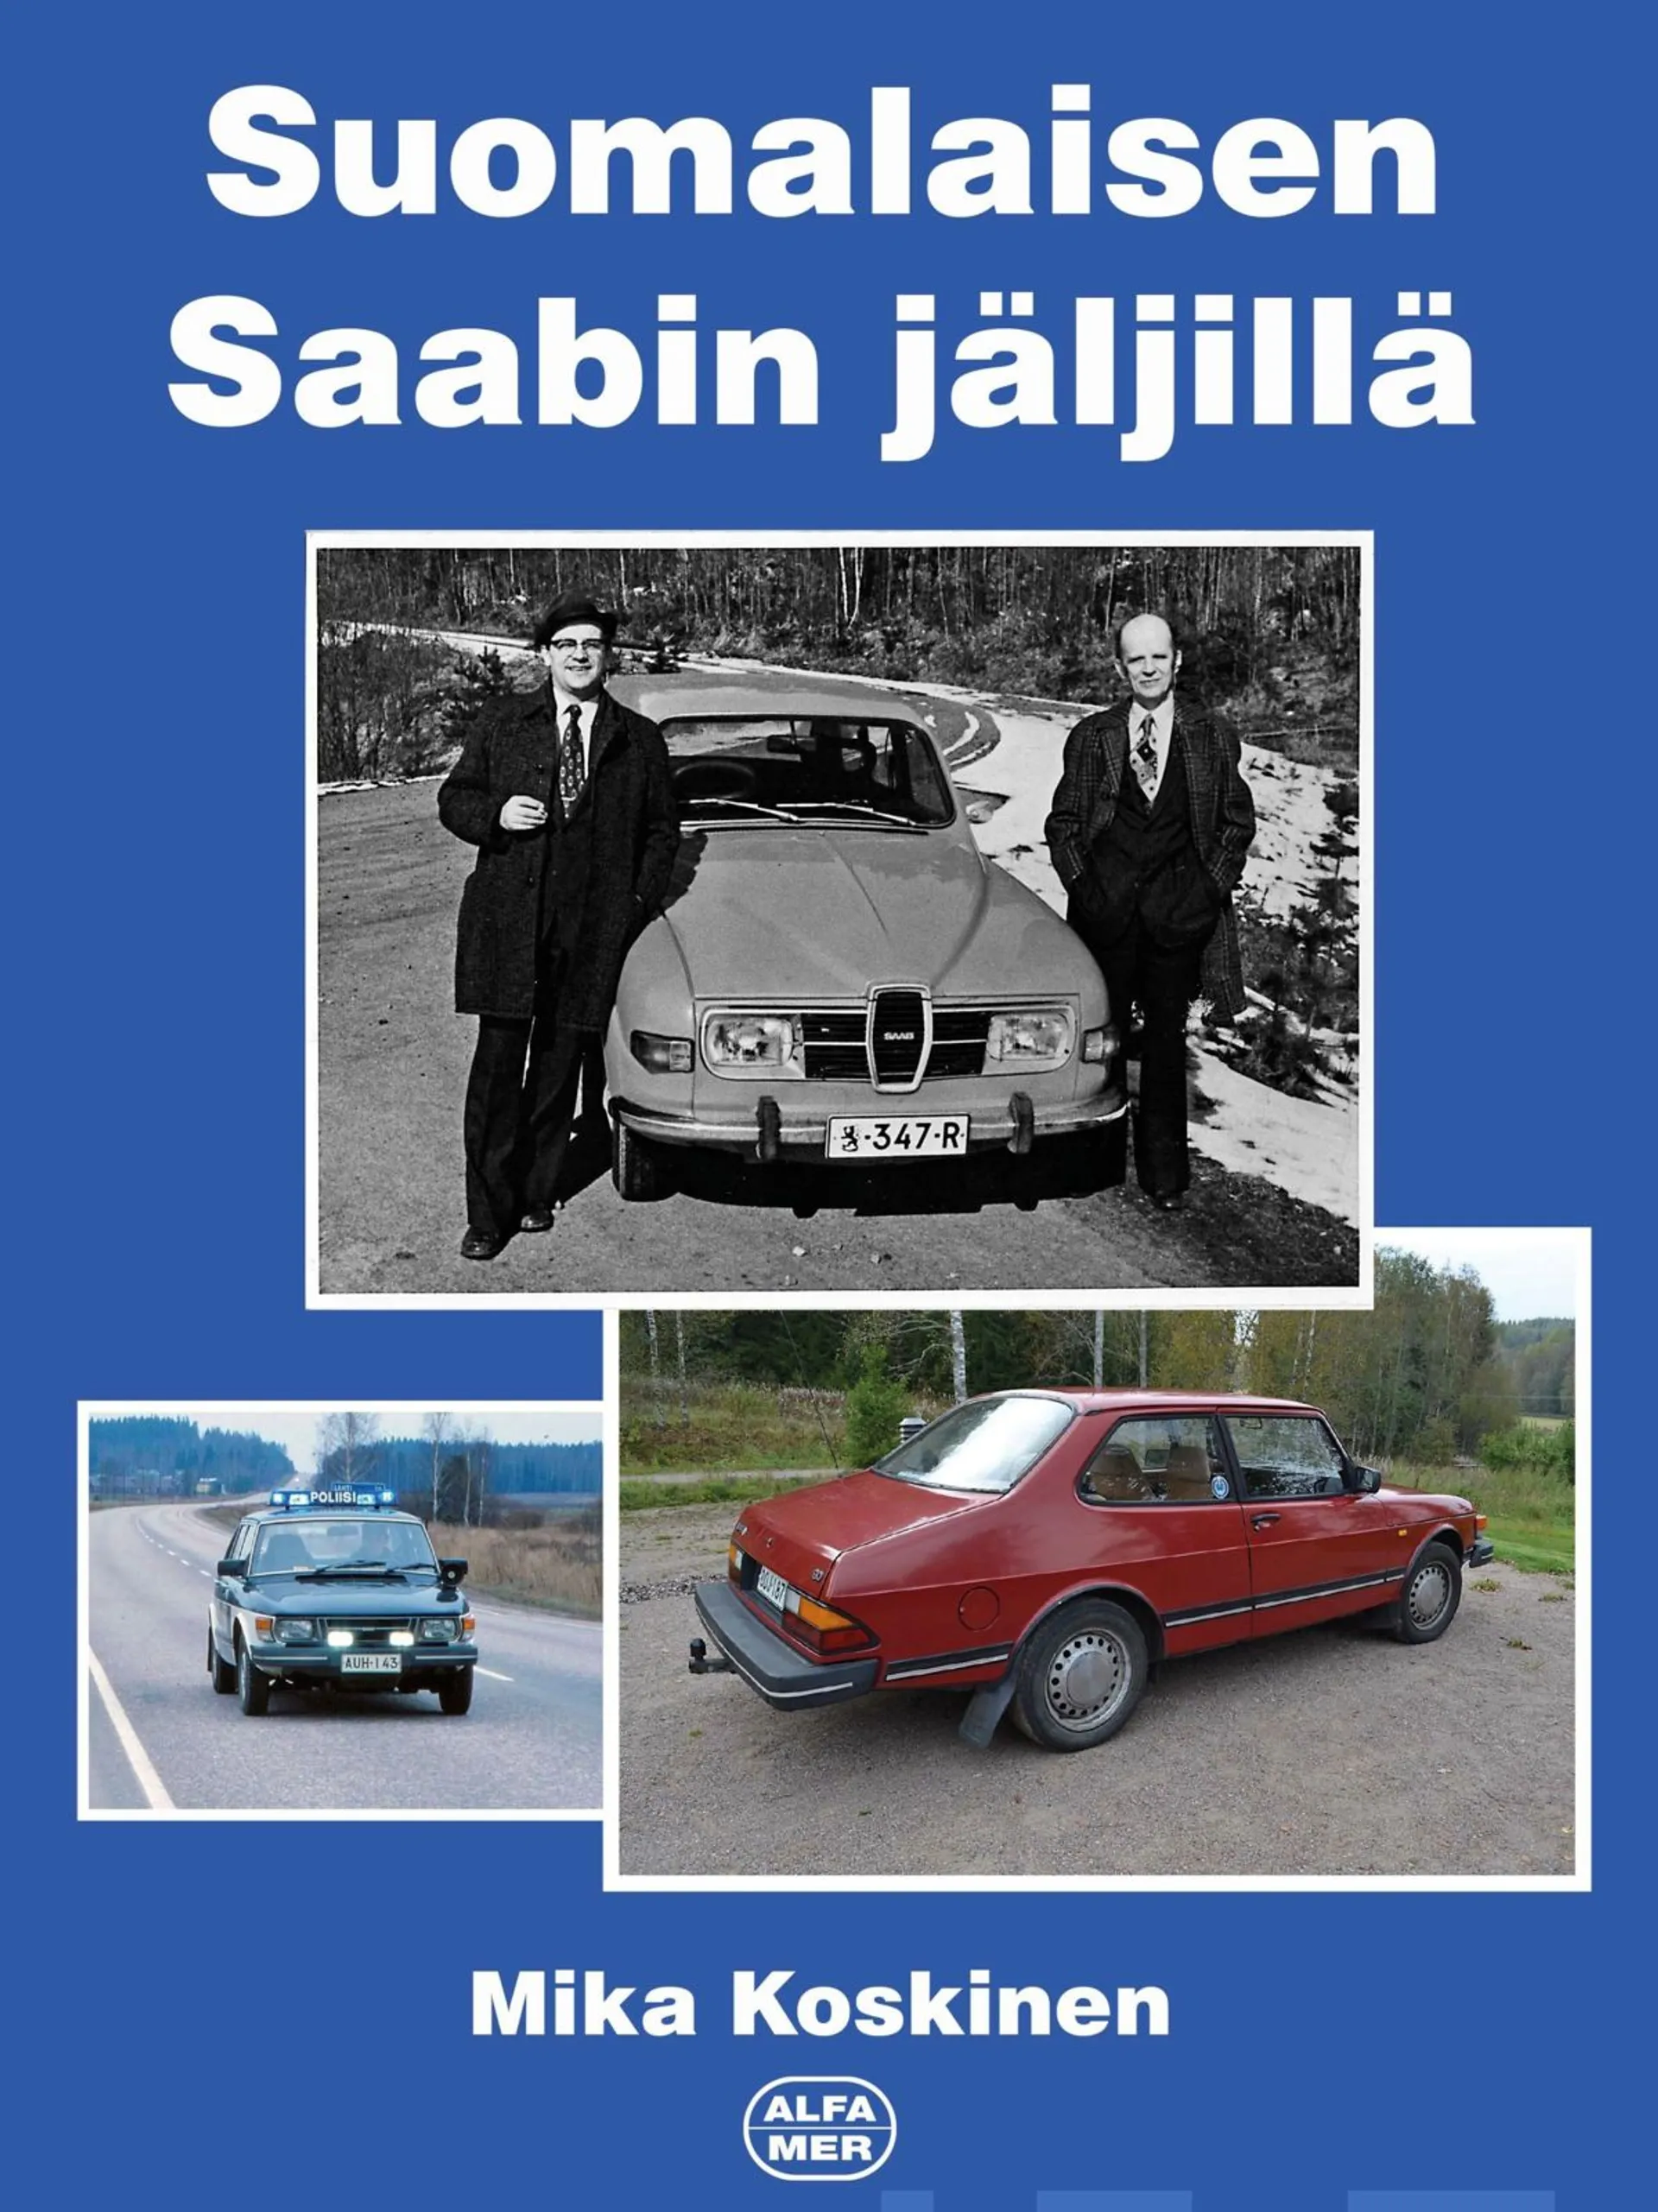 Koskinen, Suomalaisen Saabin jäljillä